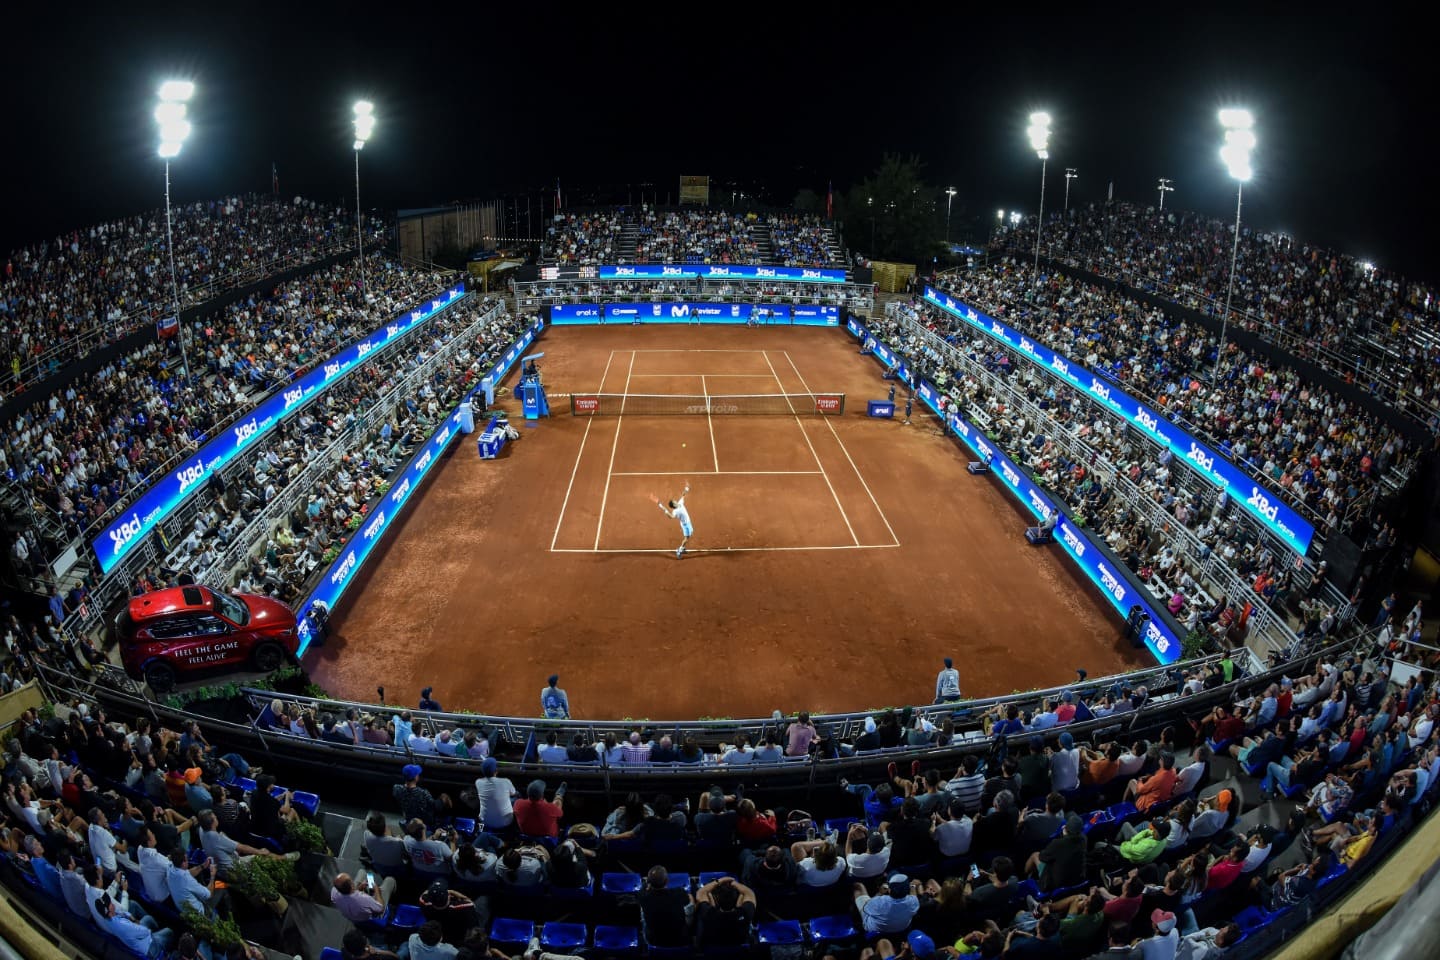 Luego de la apasionante final en Buenos Aires, Santiago abre el Chile Open con atractivos para sus visitantes